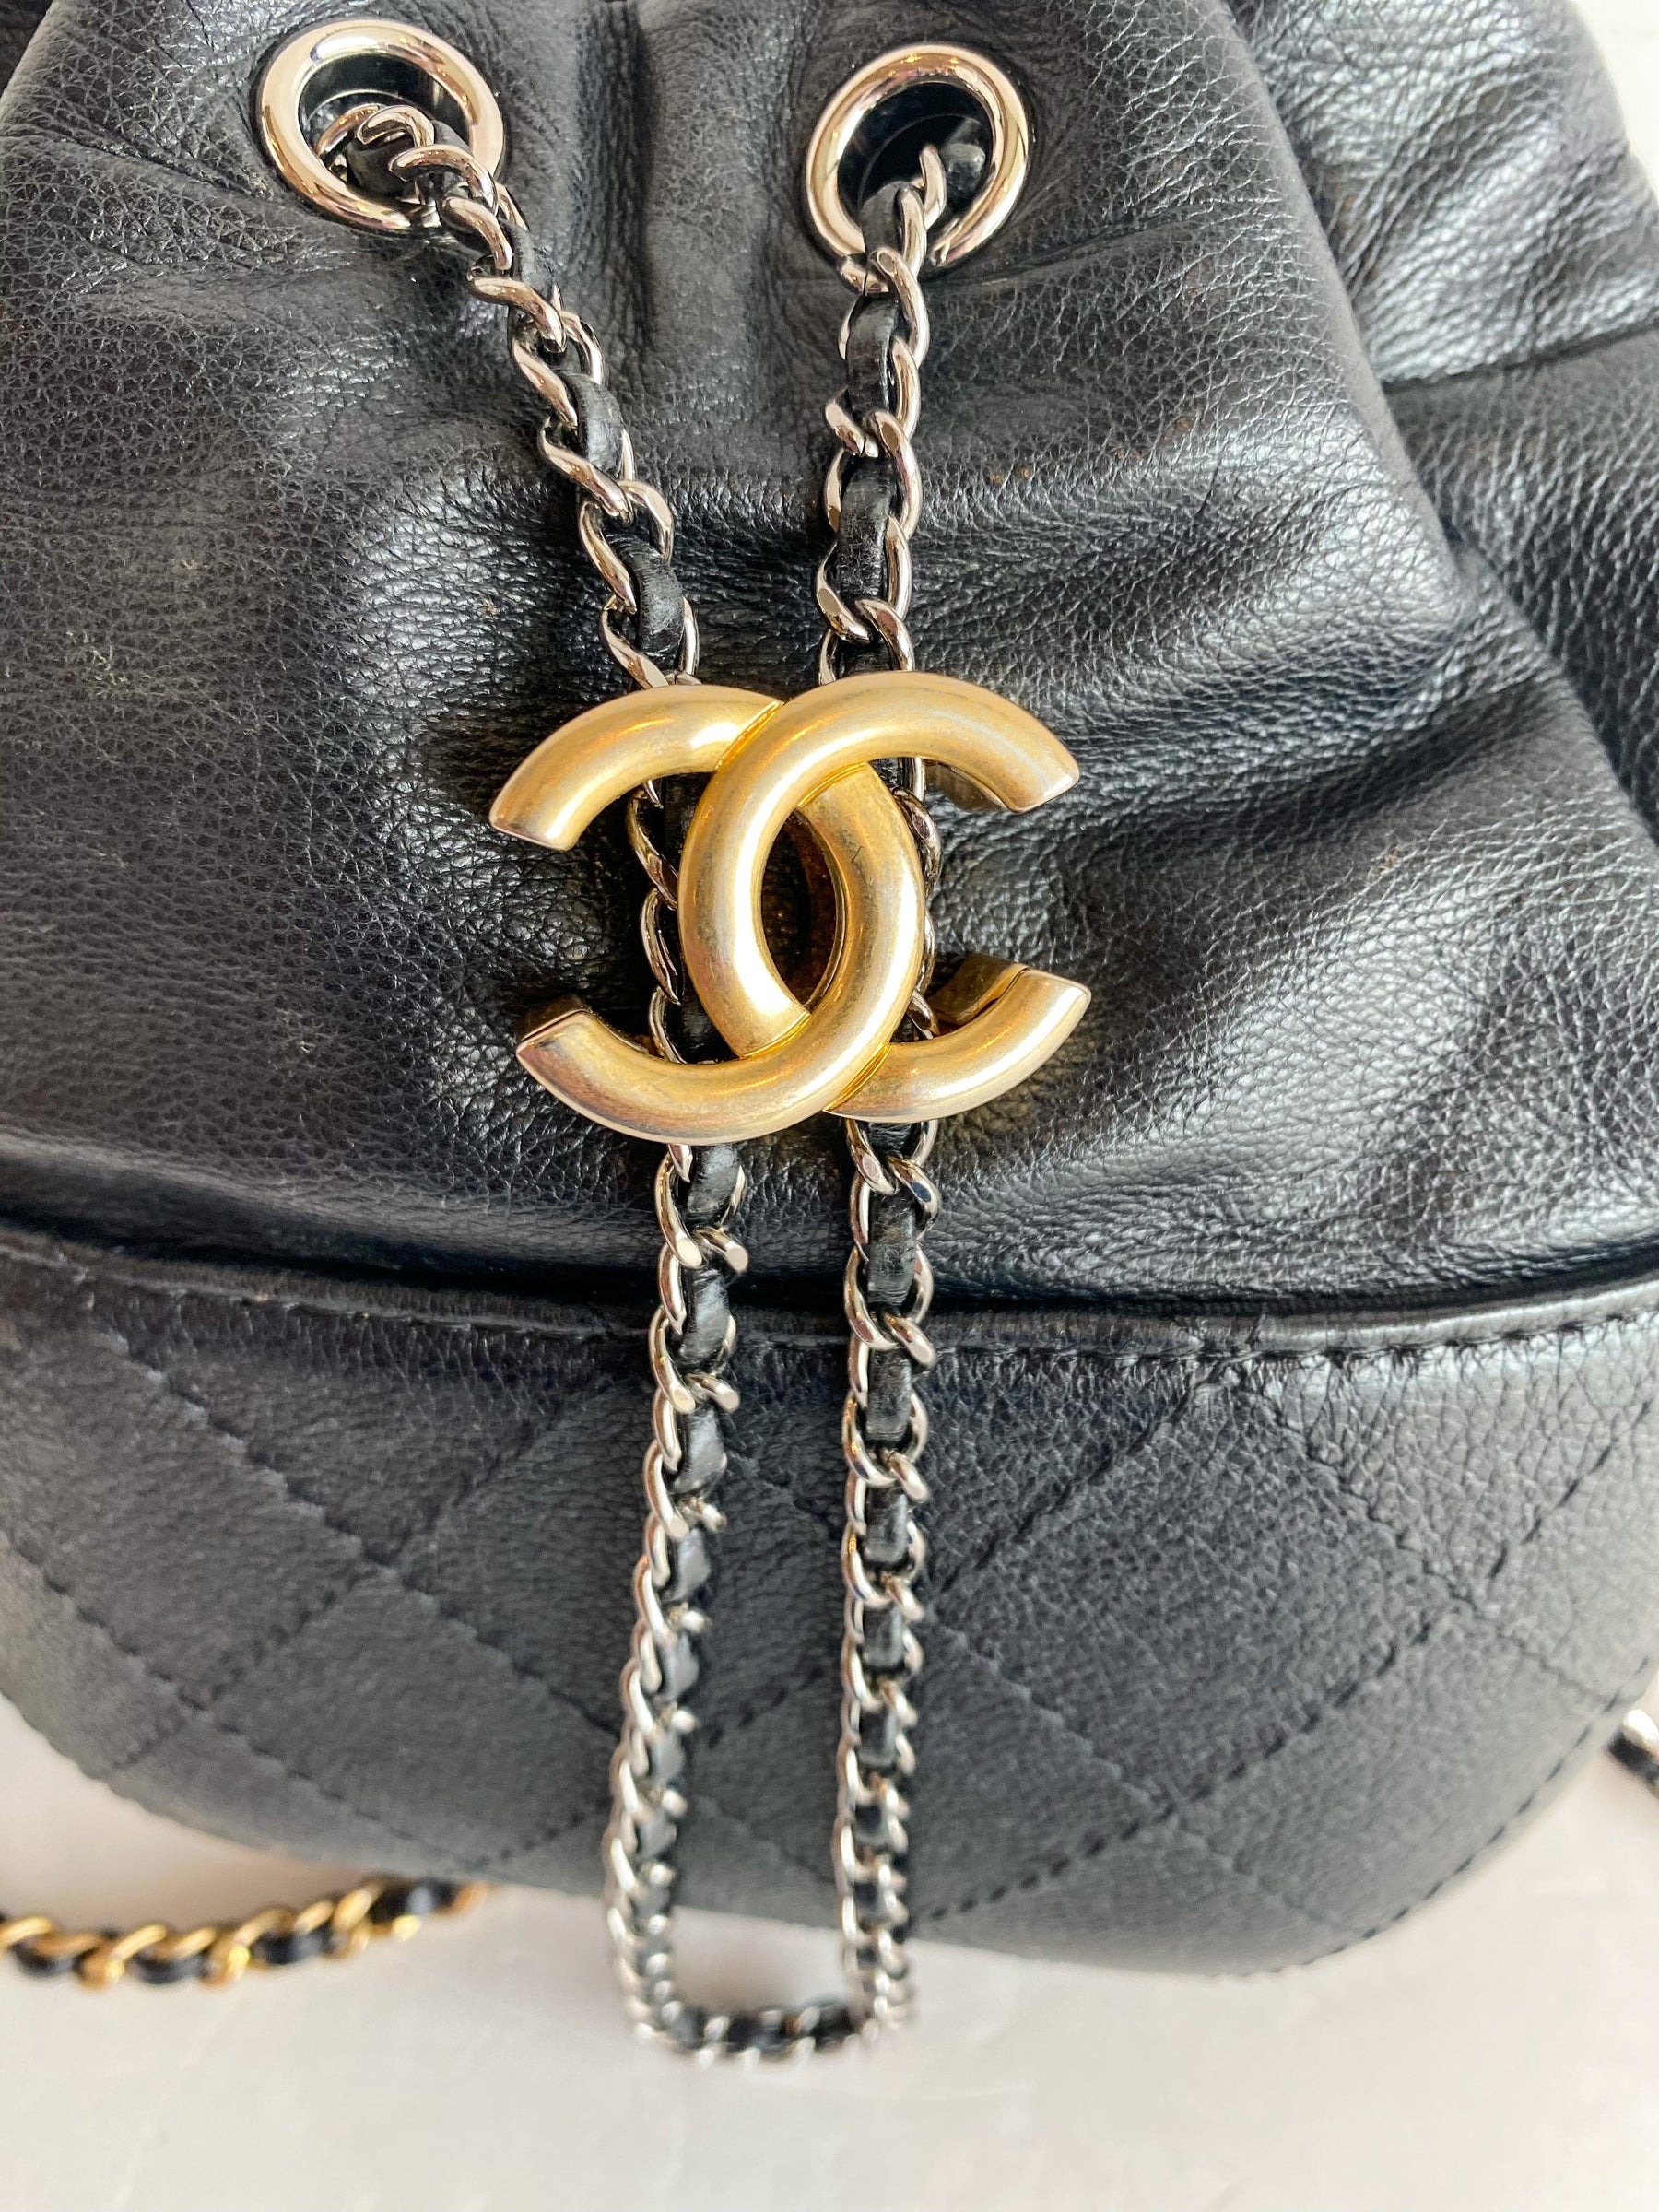 Chanel Gabrielle Bucket Bag Black Leather Gold Interlocking CC Logo